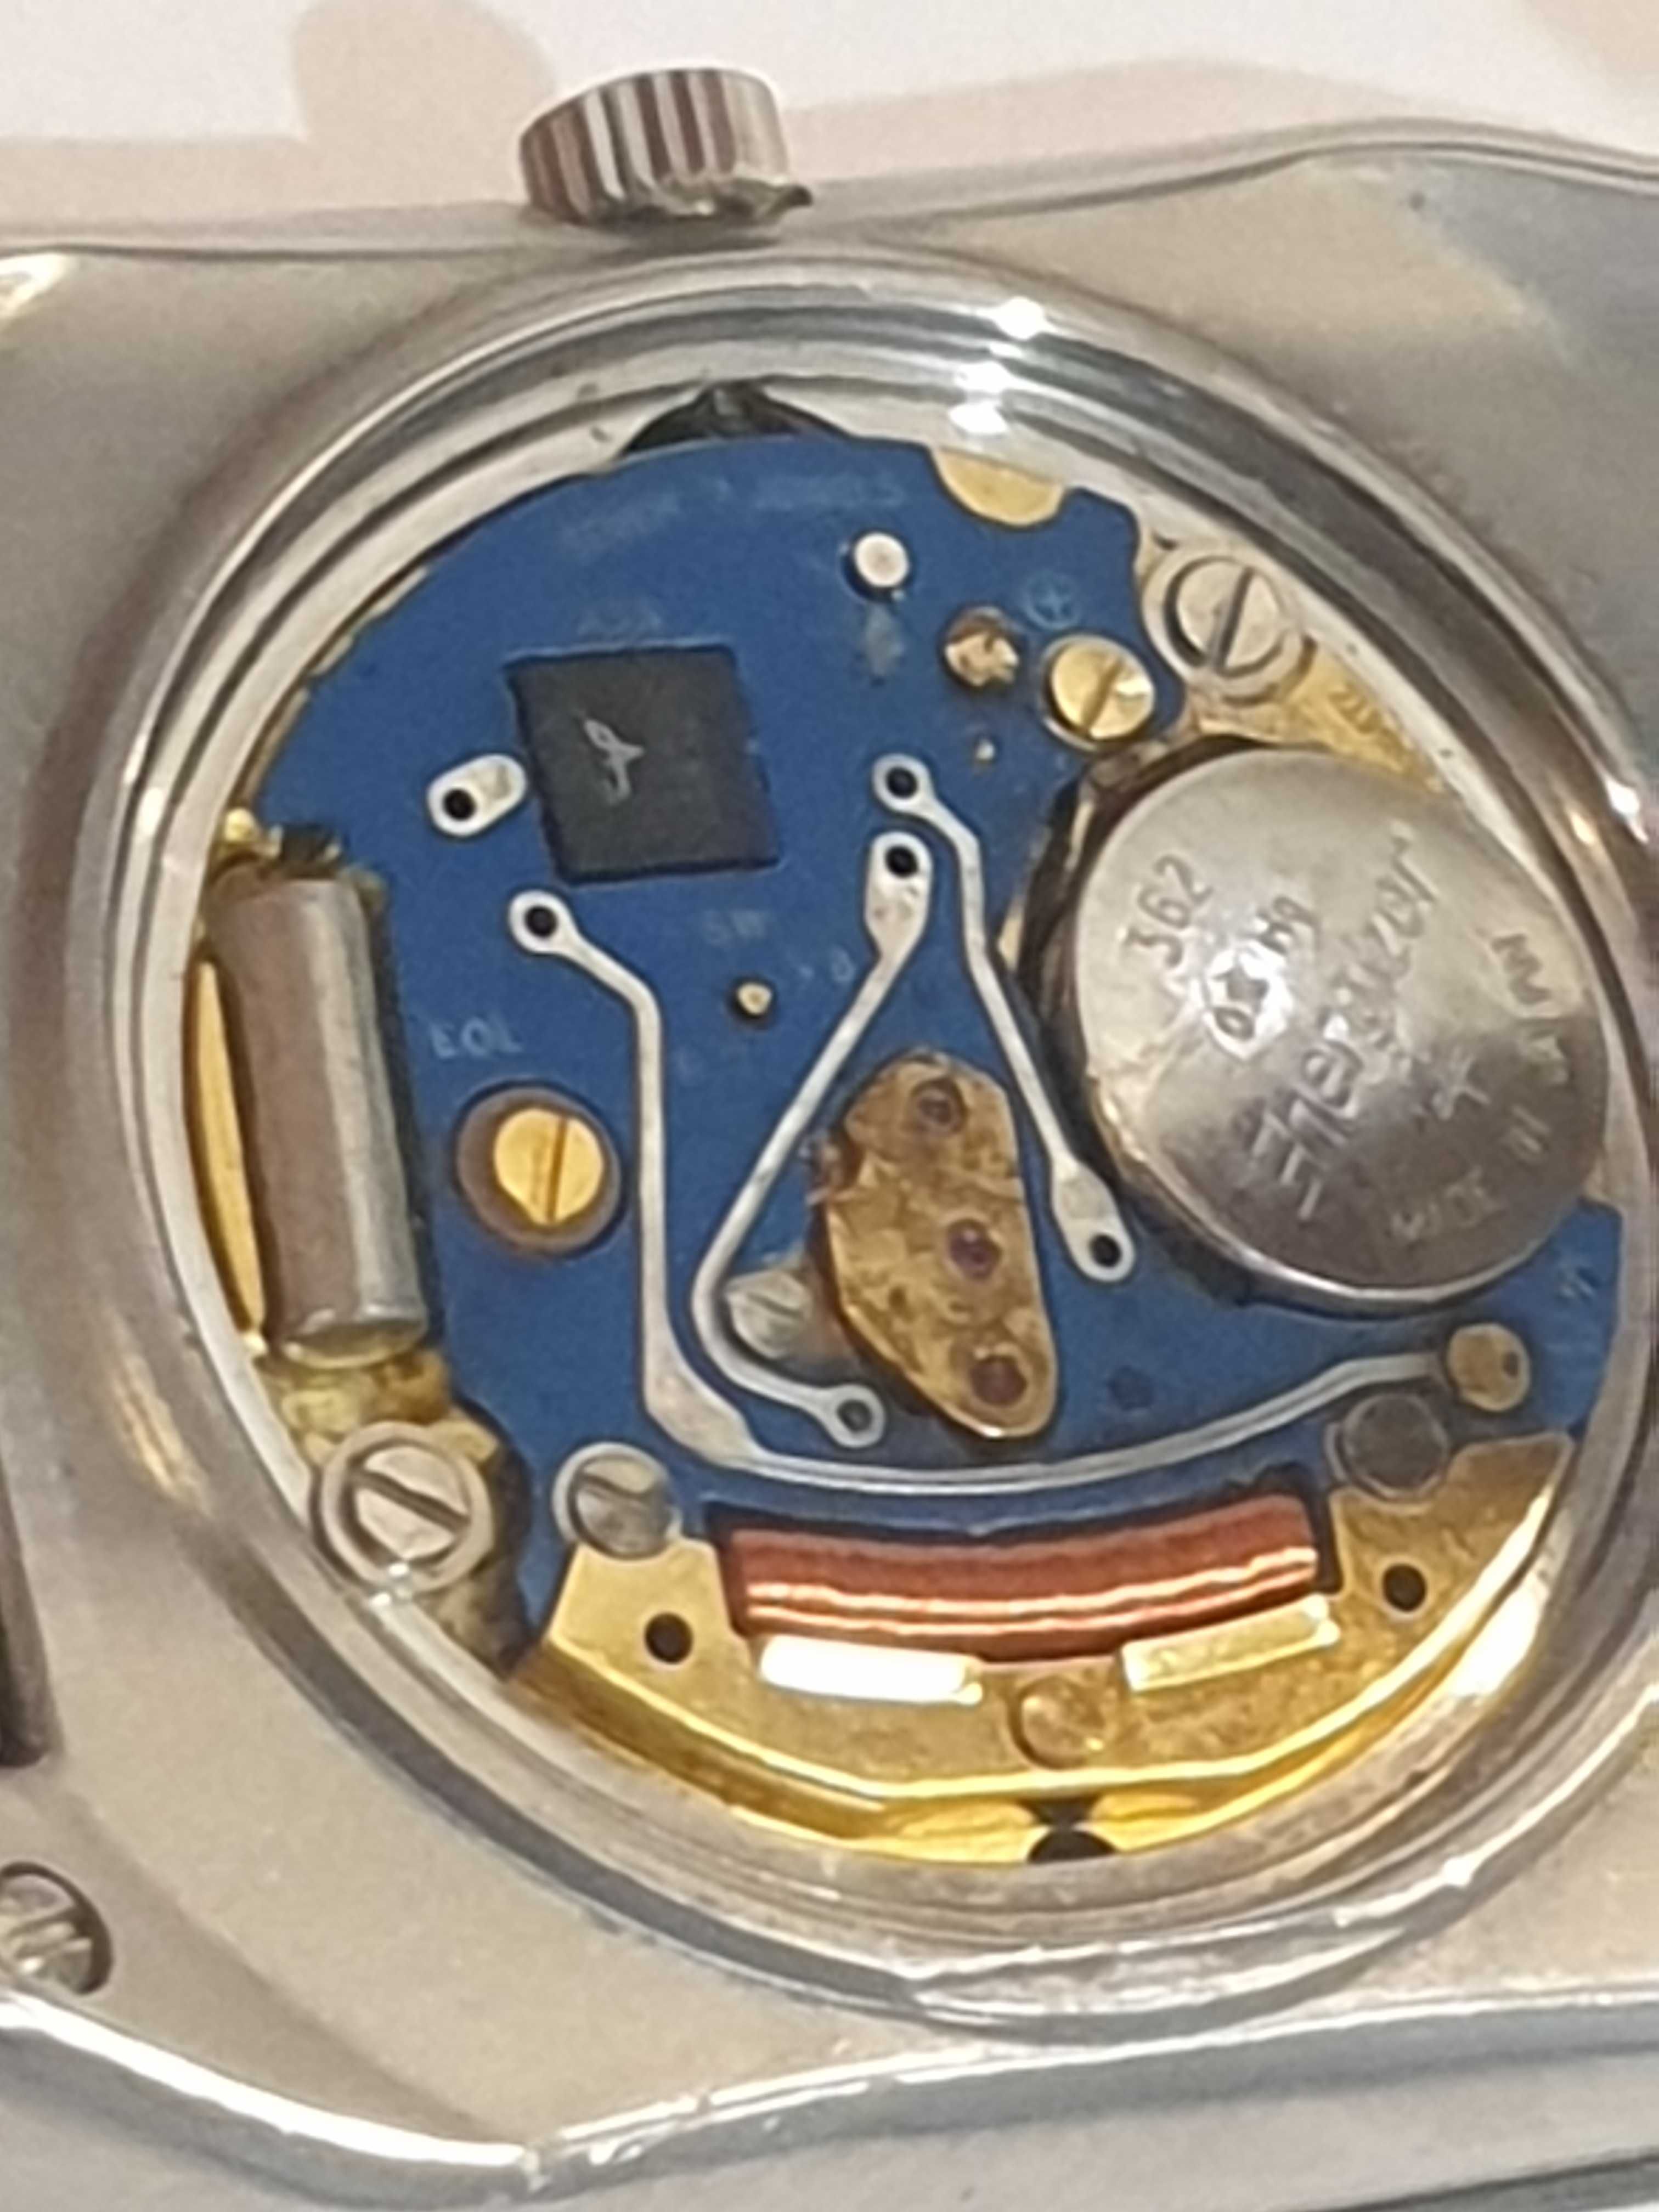 RADO DIASTAR 129.0266.3 oryginalny meski zegarek kwarcowy ceramika